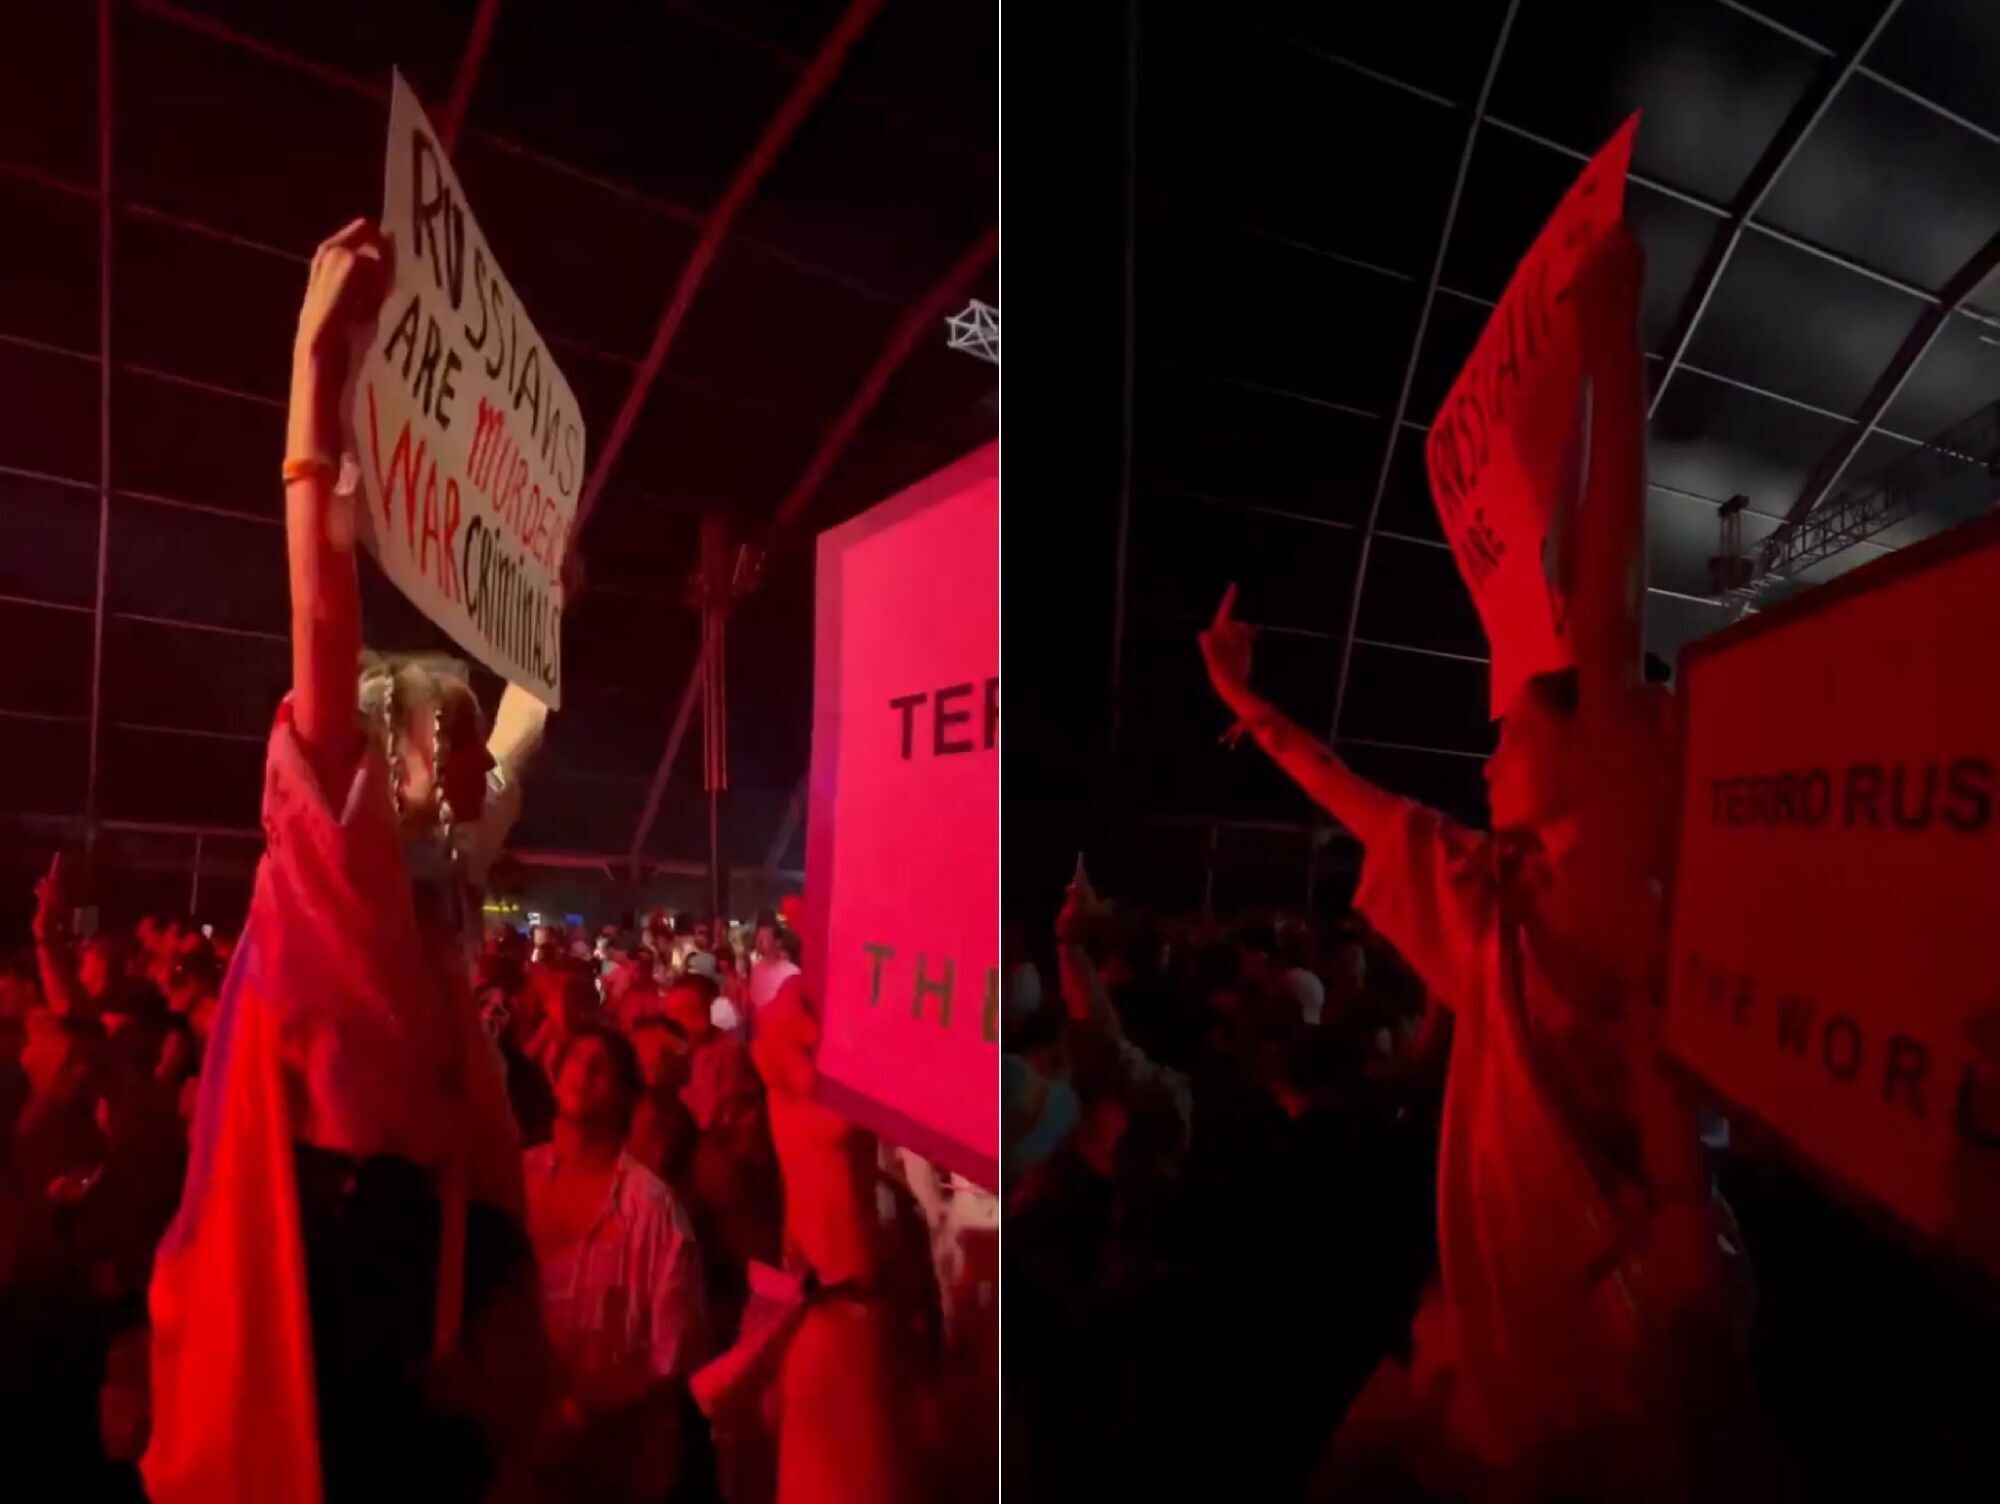 Скандал навколо Sziget. Аліна Паш прийшла на концерт російського гурту з антивоєнним плакатом, але українці не оцінили